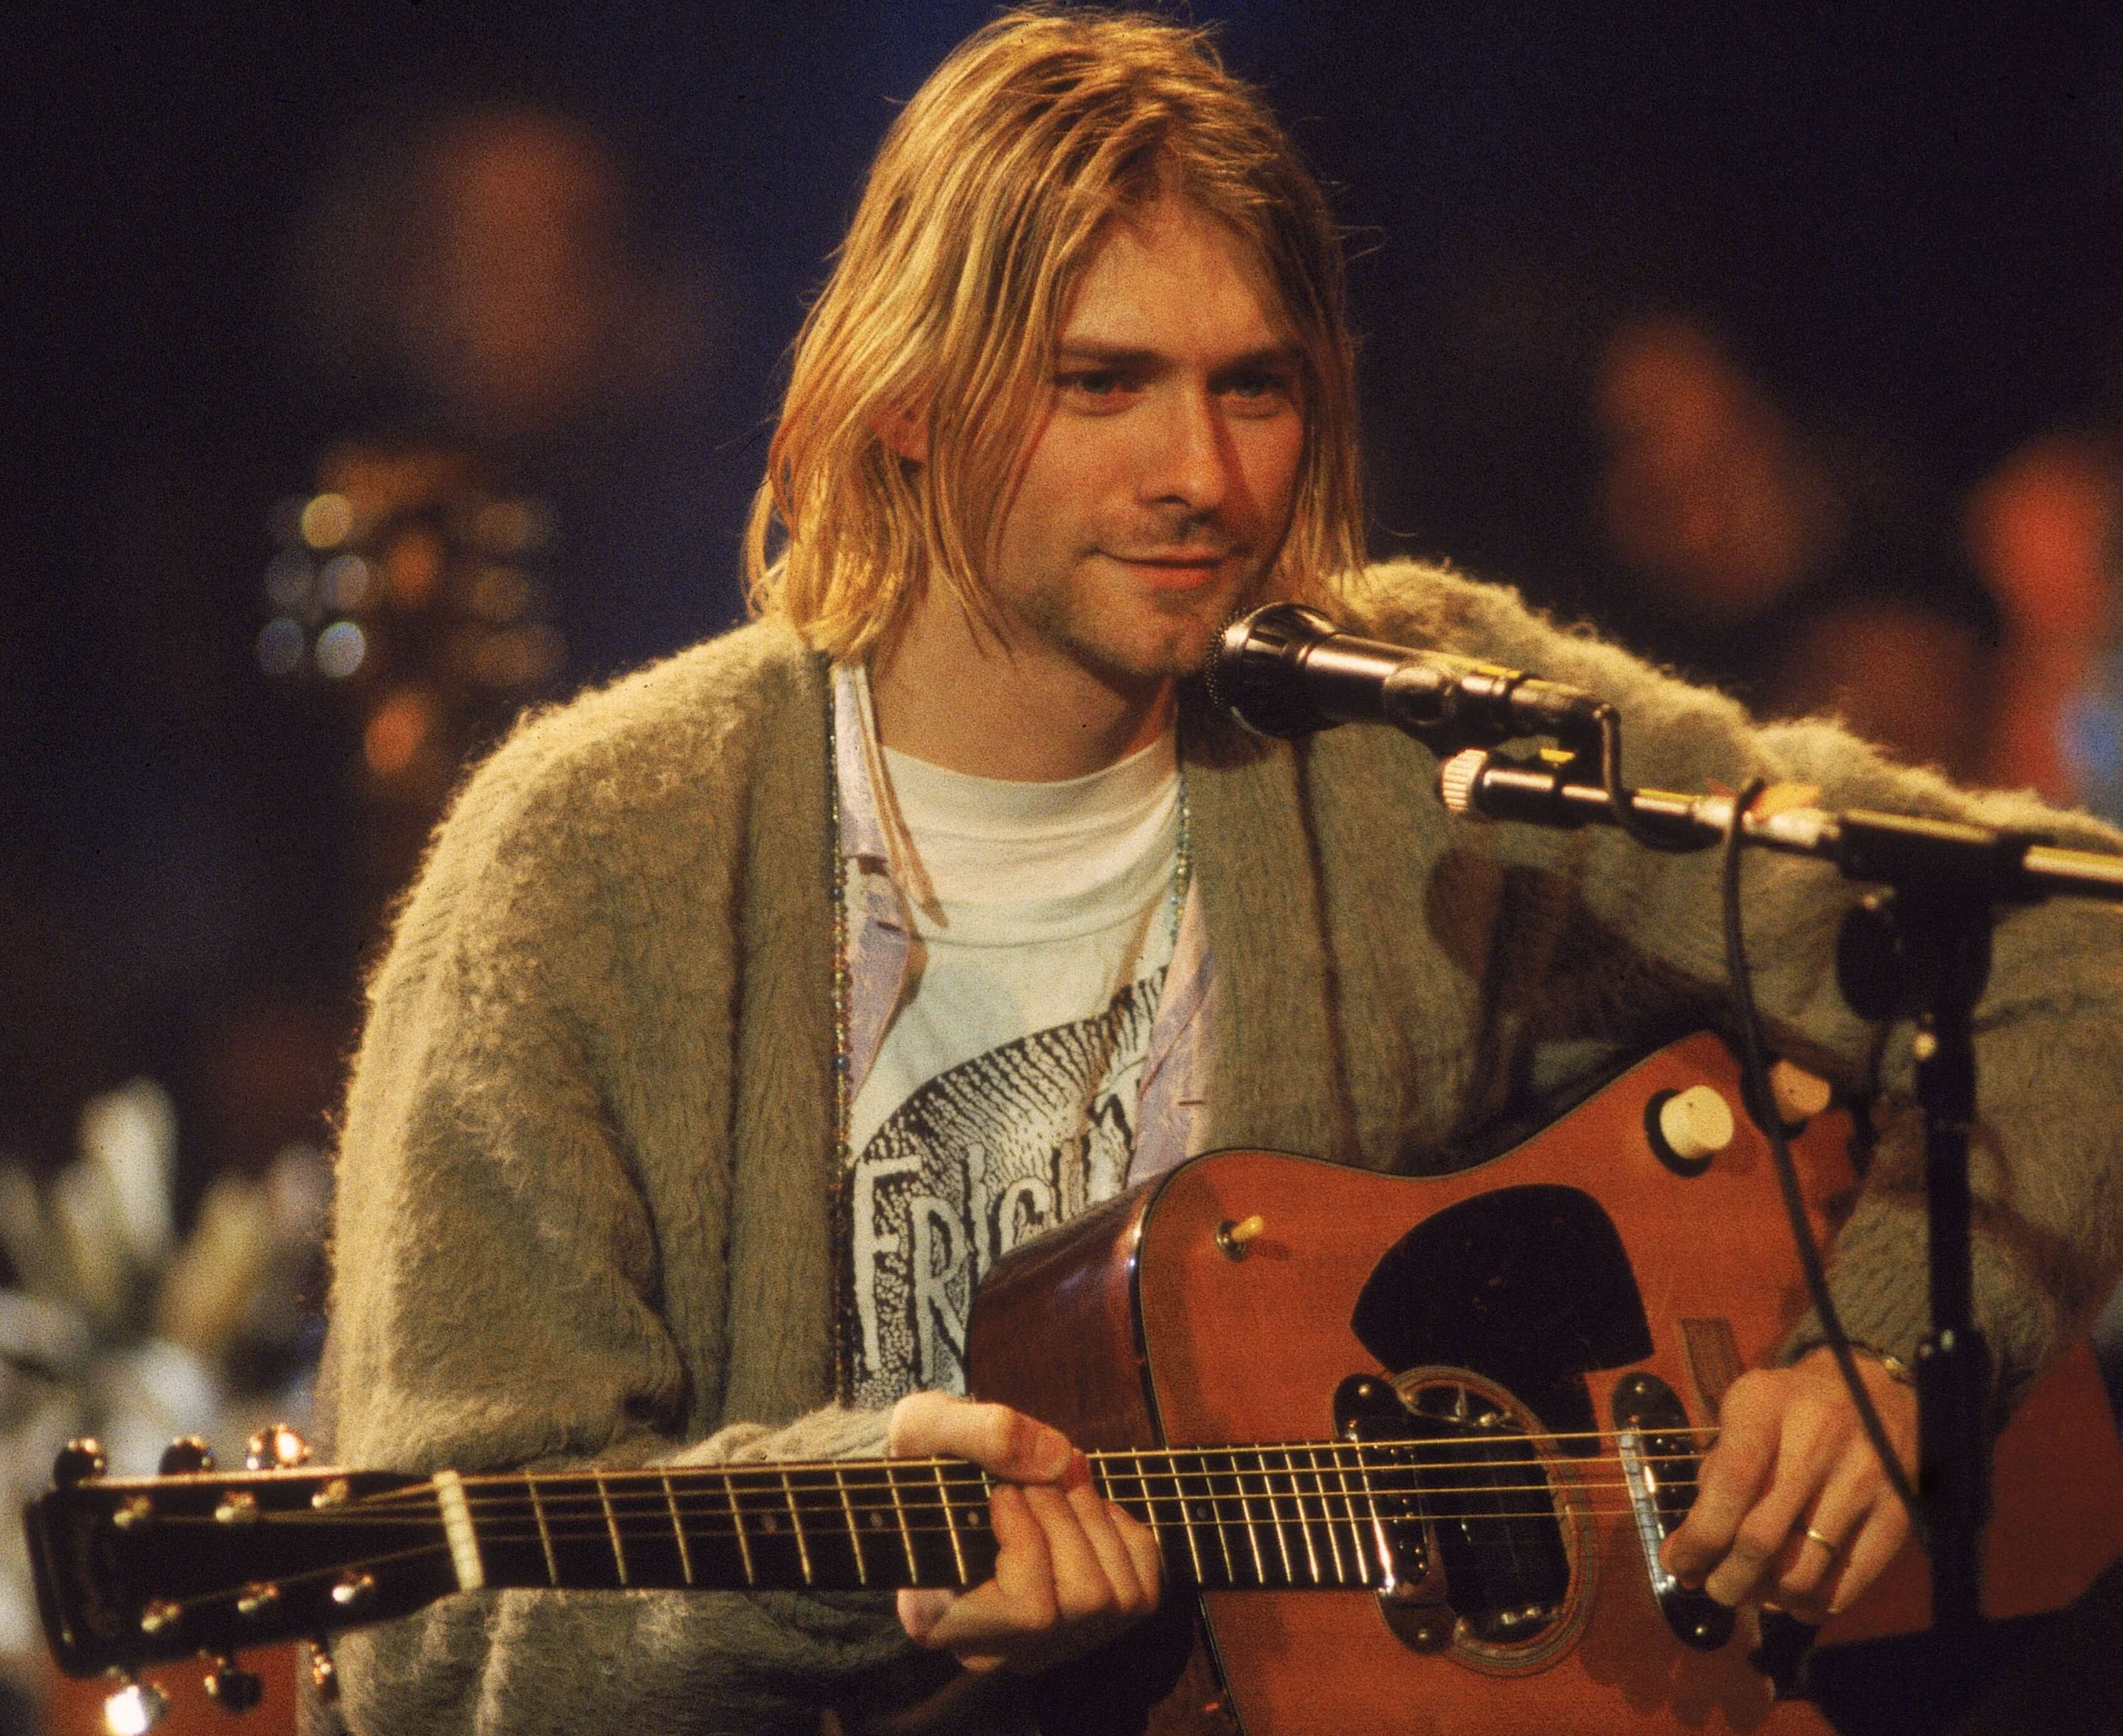 Nirvana's Kurt Cobain in a sweater